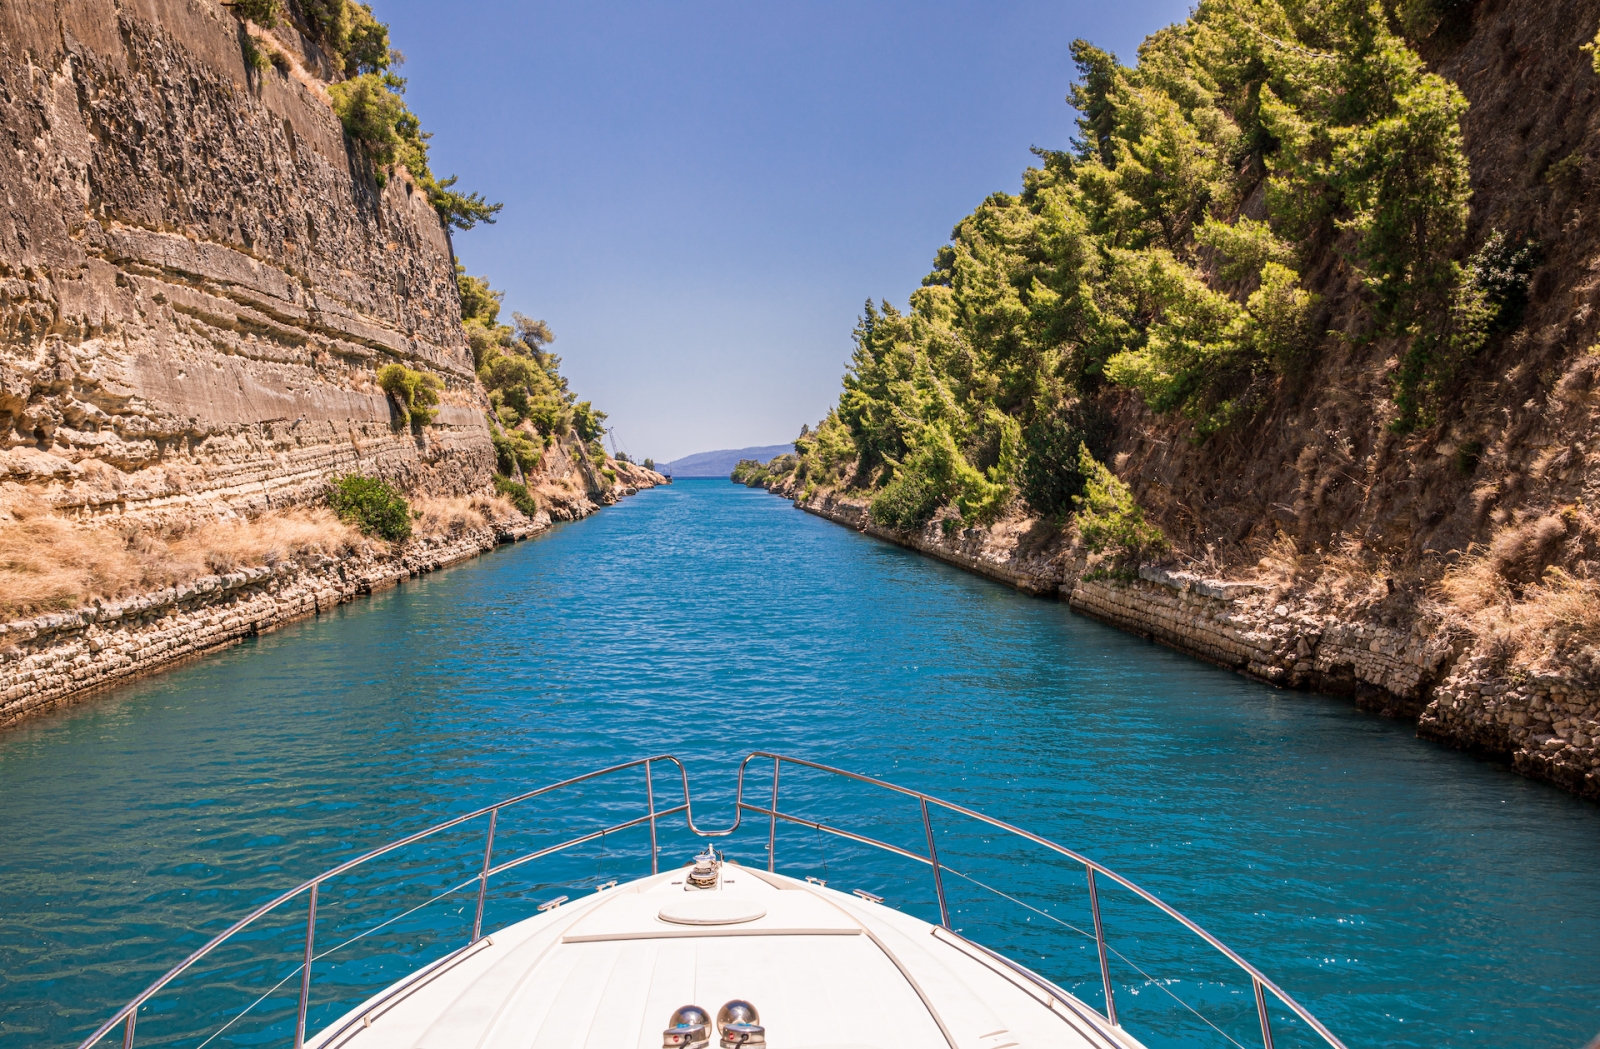 Passando attraverso il Canale di Corinto in yacht, Grecia.  Il Canale di Corinto collega il Golfo di Corinto con il Golfo Saronico nel Mar Egeo.